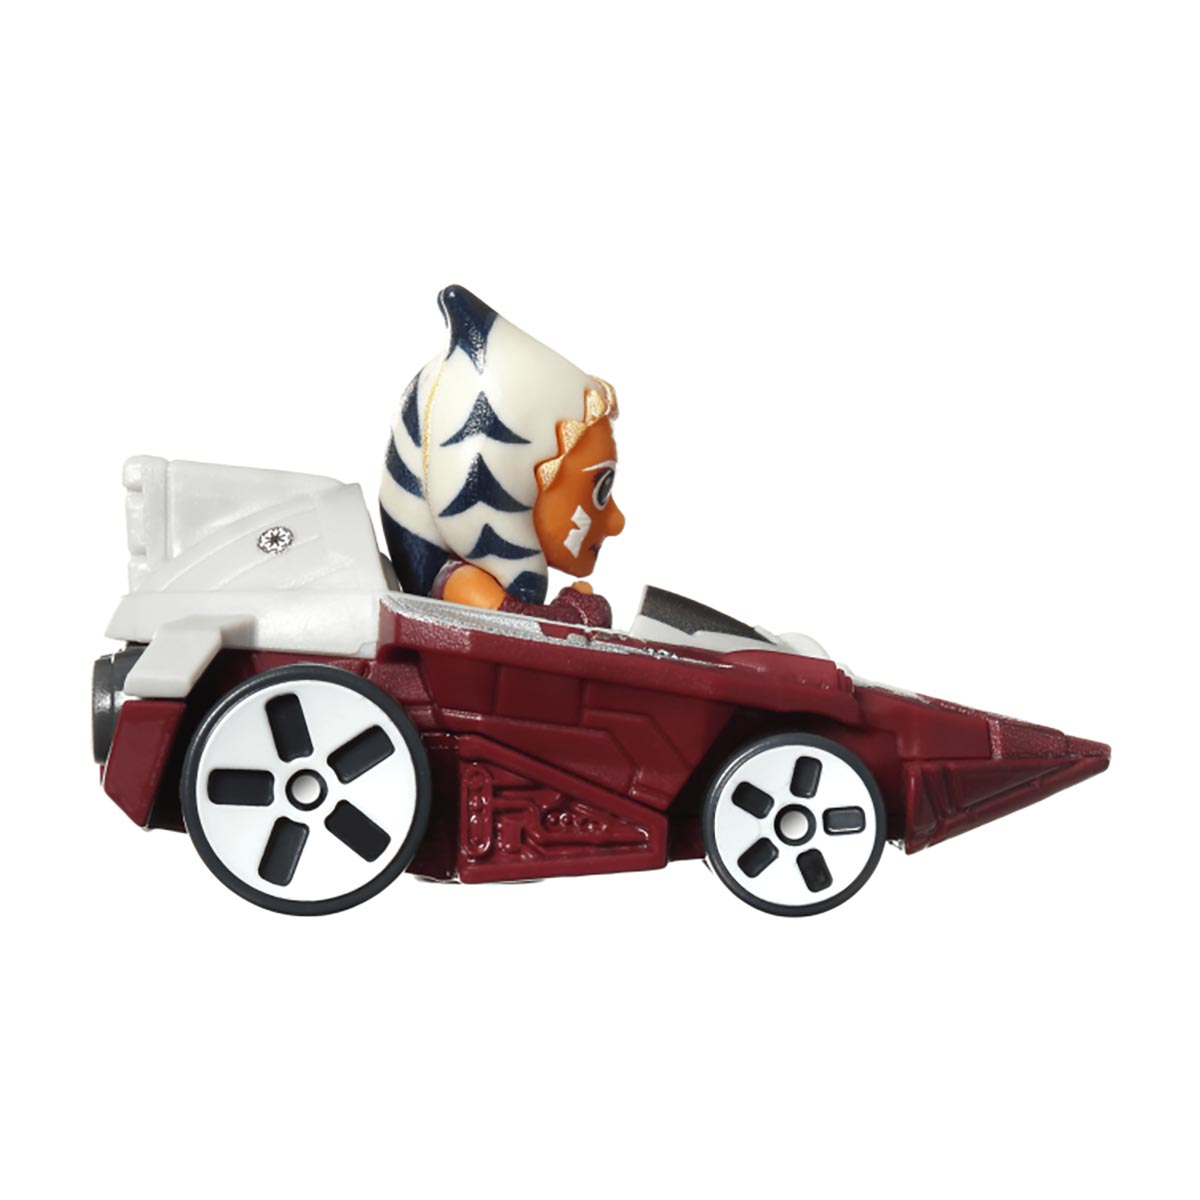 Piste Hot Wheels Racerverse Star Wars avec bolides moulés, 4 ans et plus